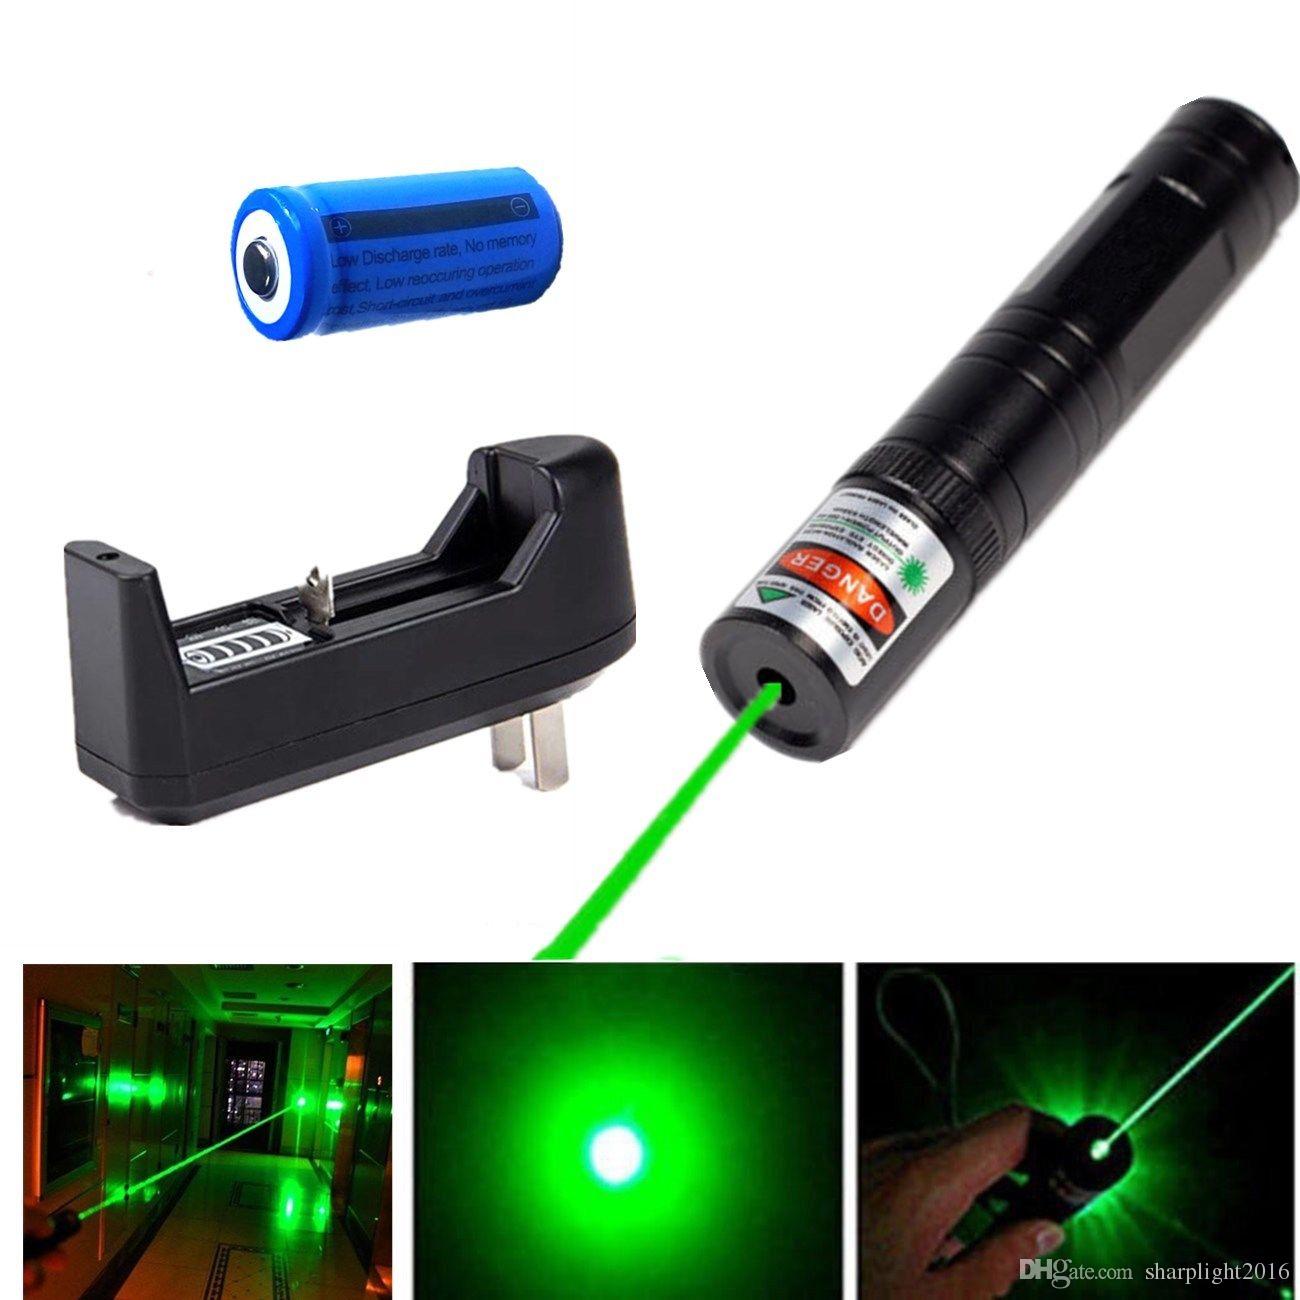 Puntero Laser de largo alcance – Tienda del Médico